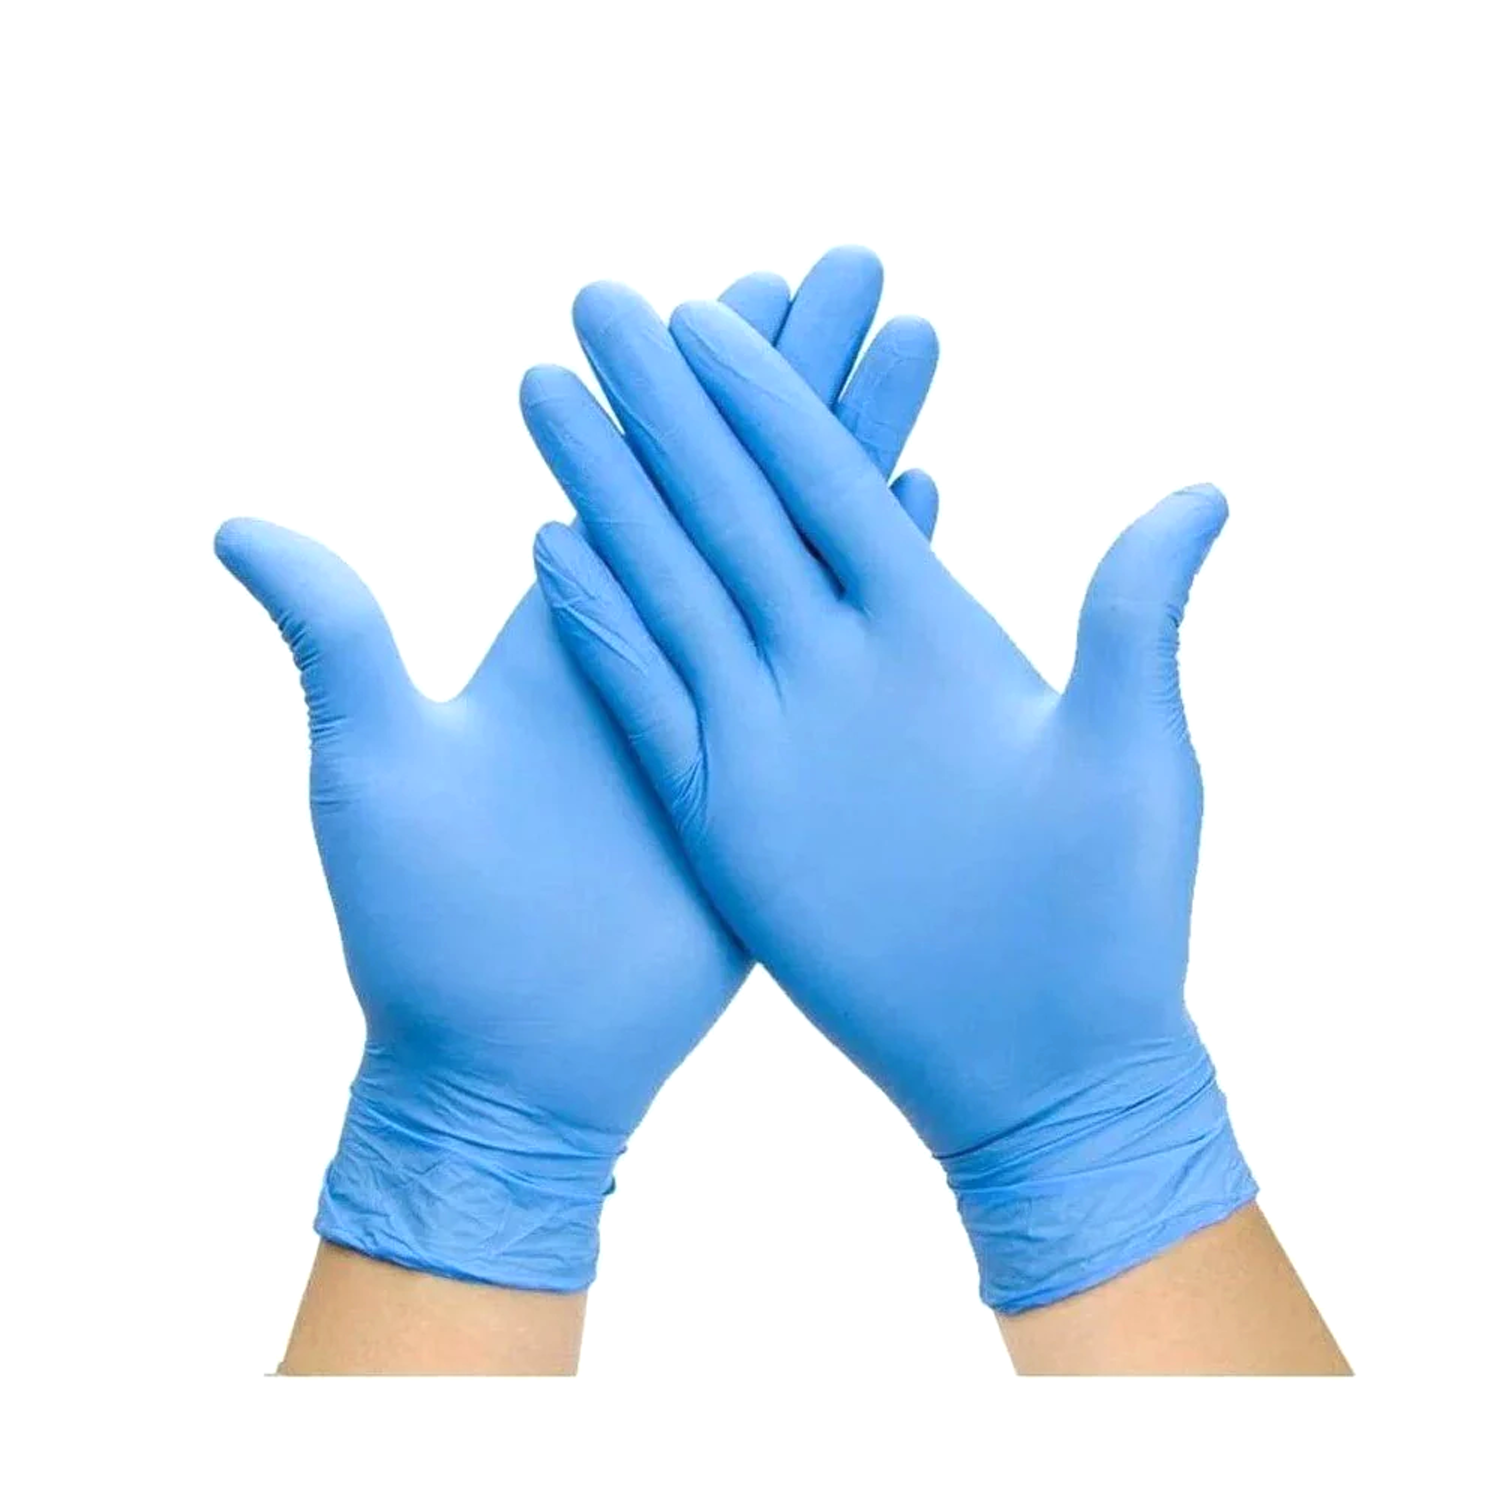 Cómo elegir los guantes de nitrilo?